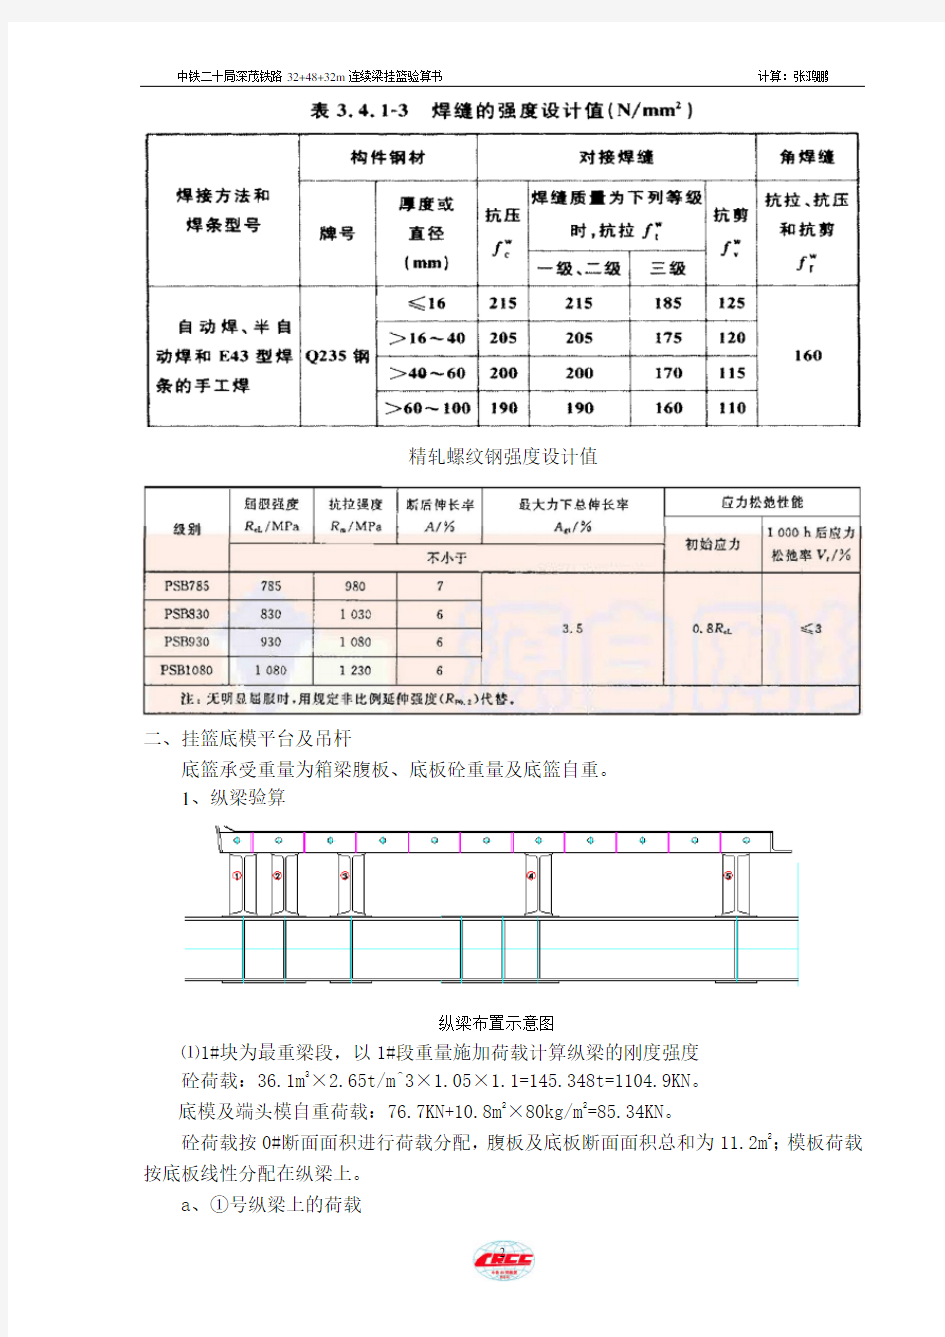 铁路32-48-32m连续梁三角形挂篮设计计算书(手算版)详解